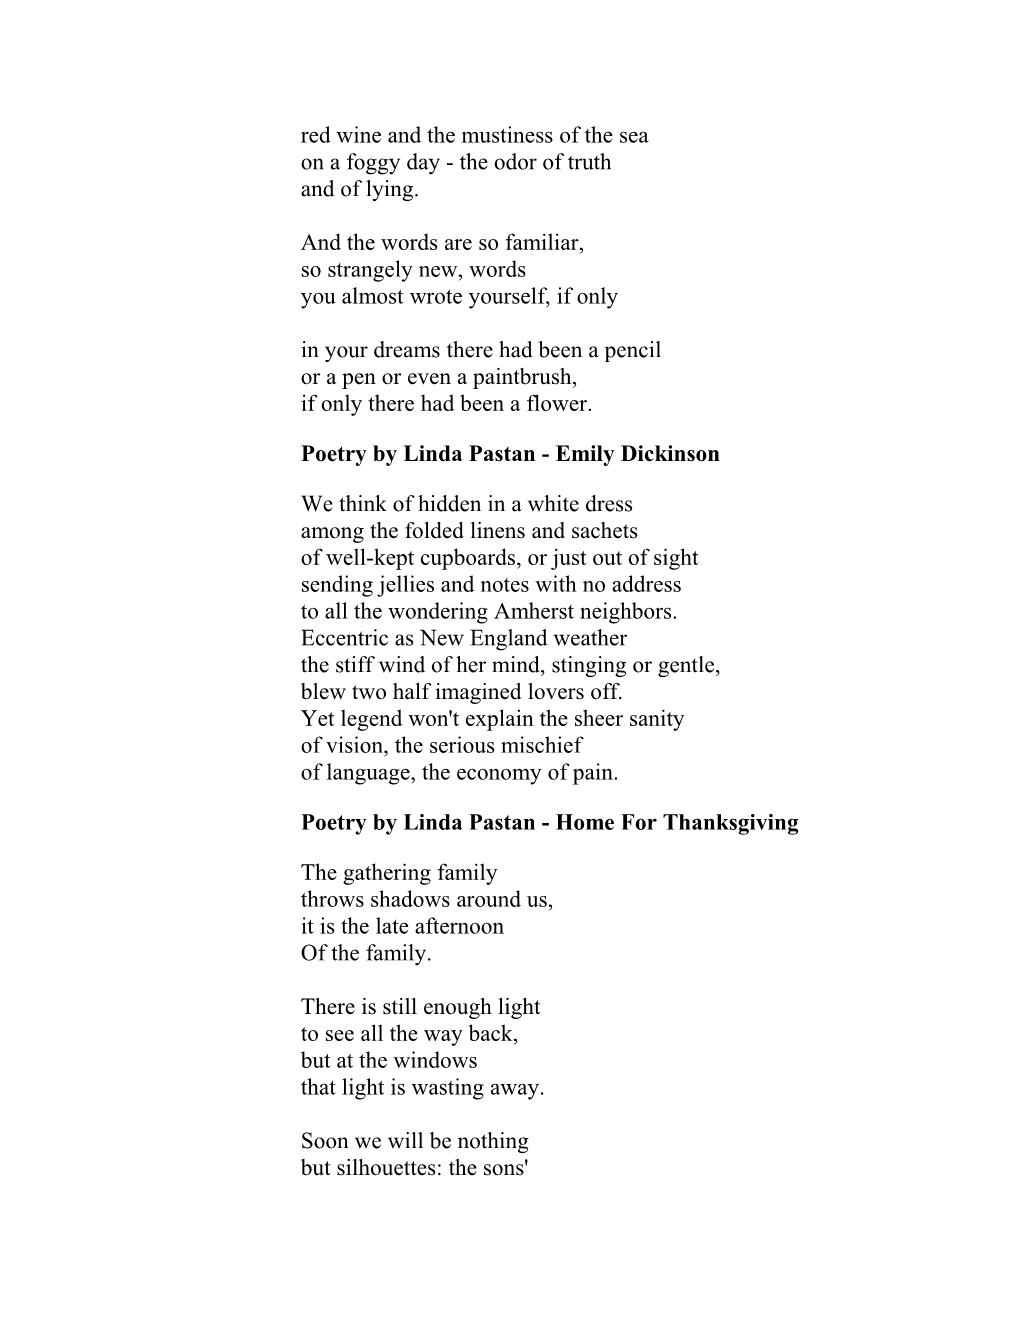 Poetry by Linda Pastan